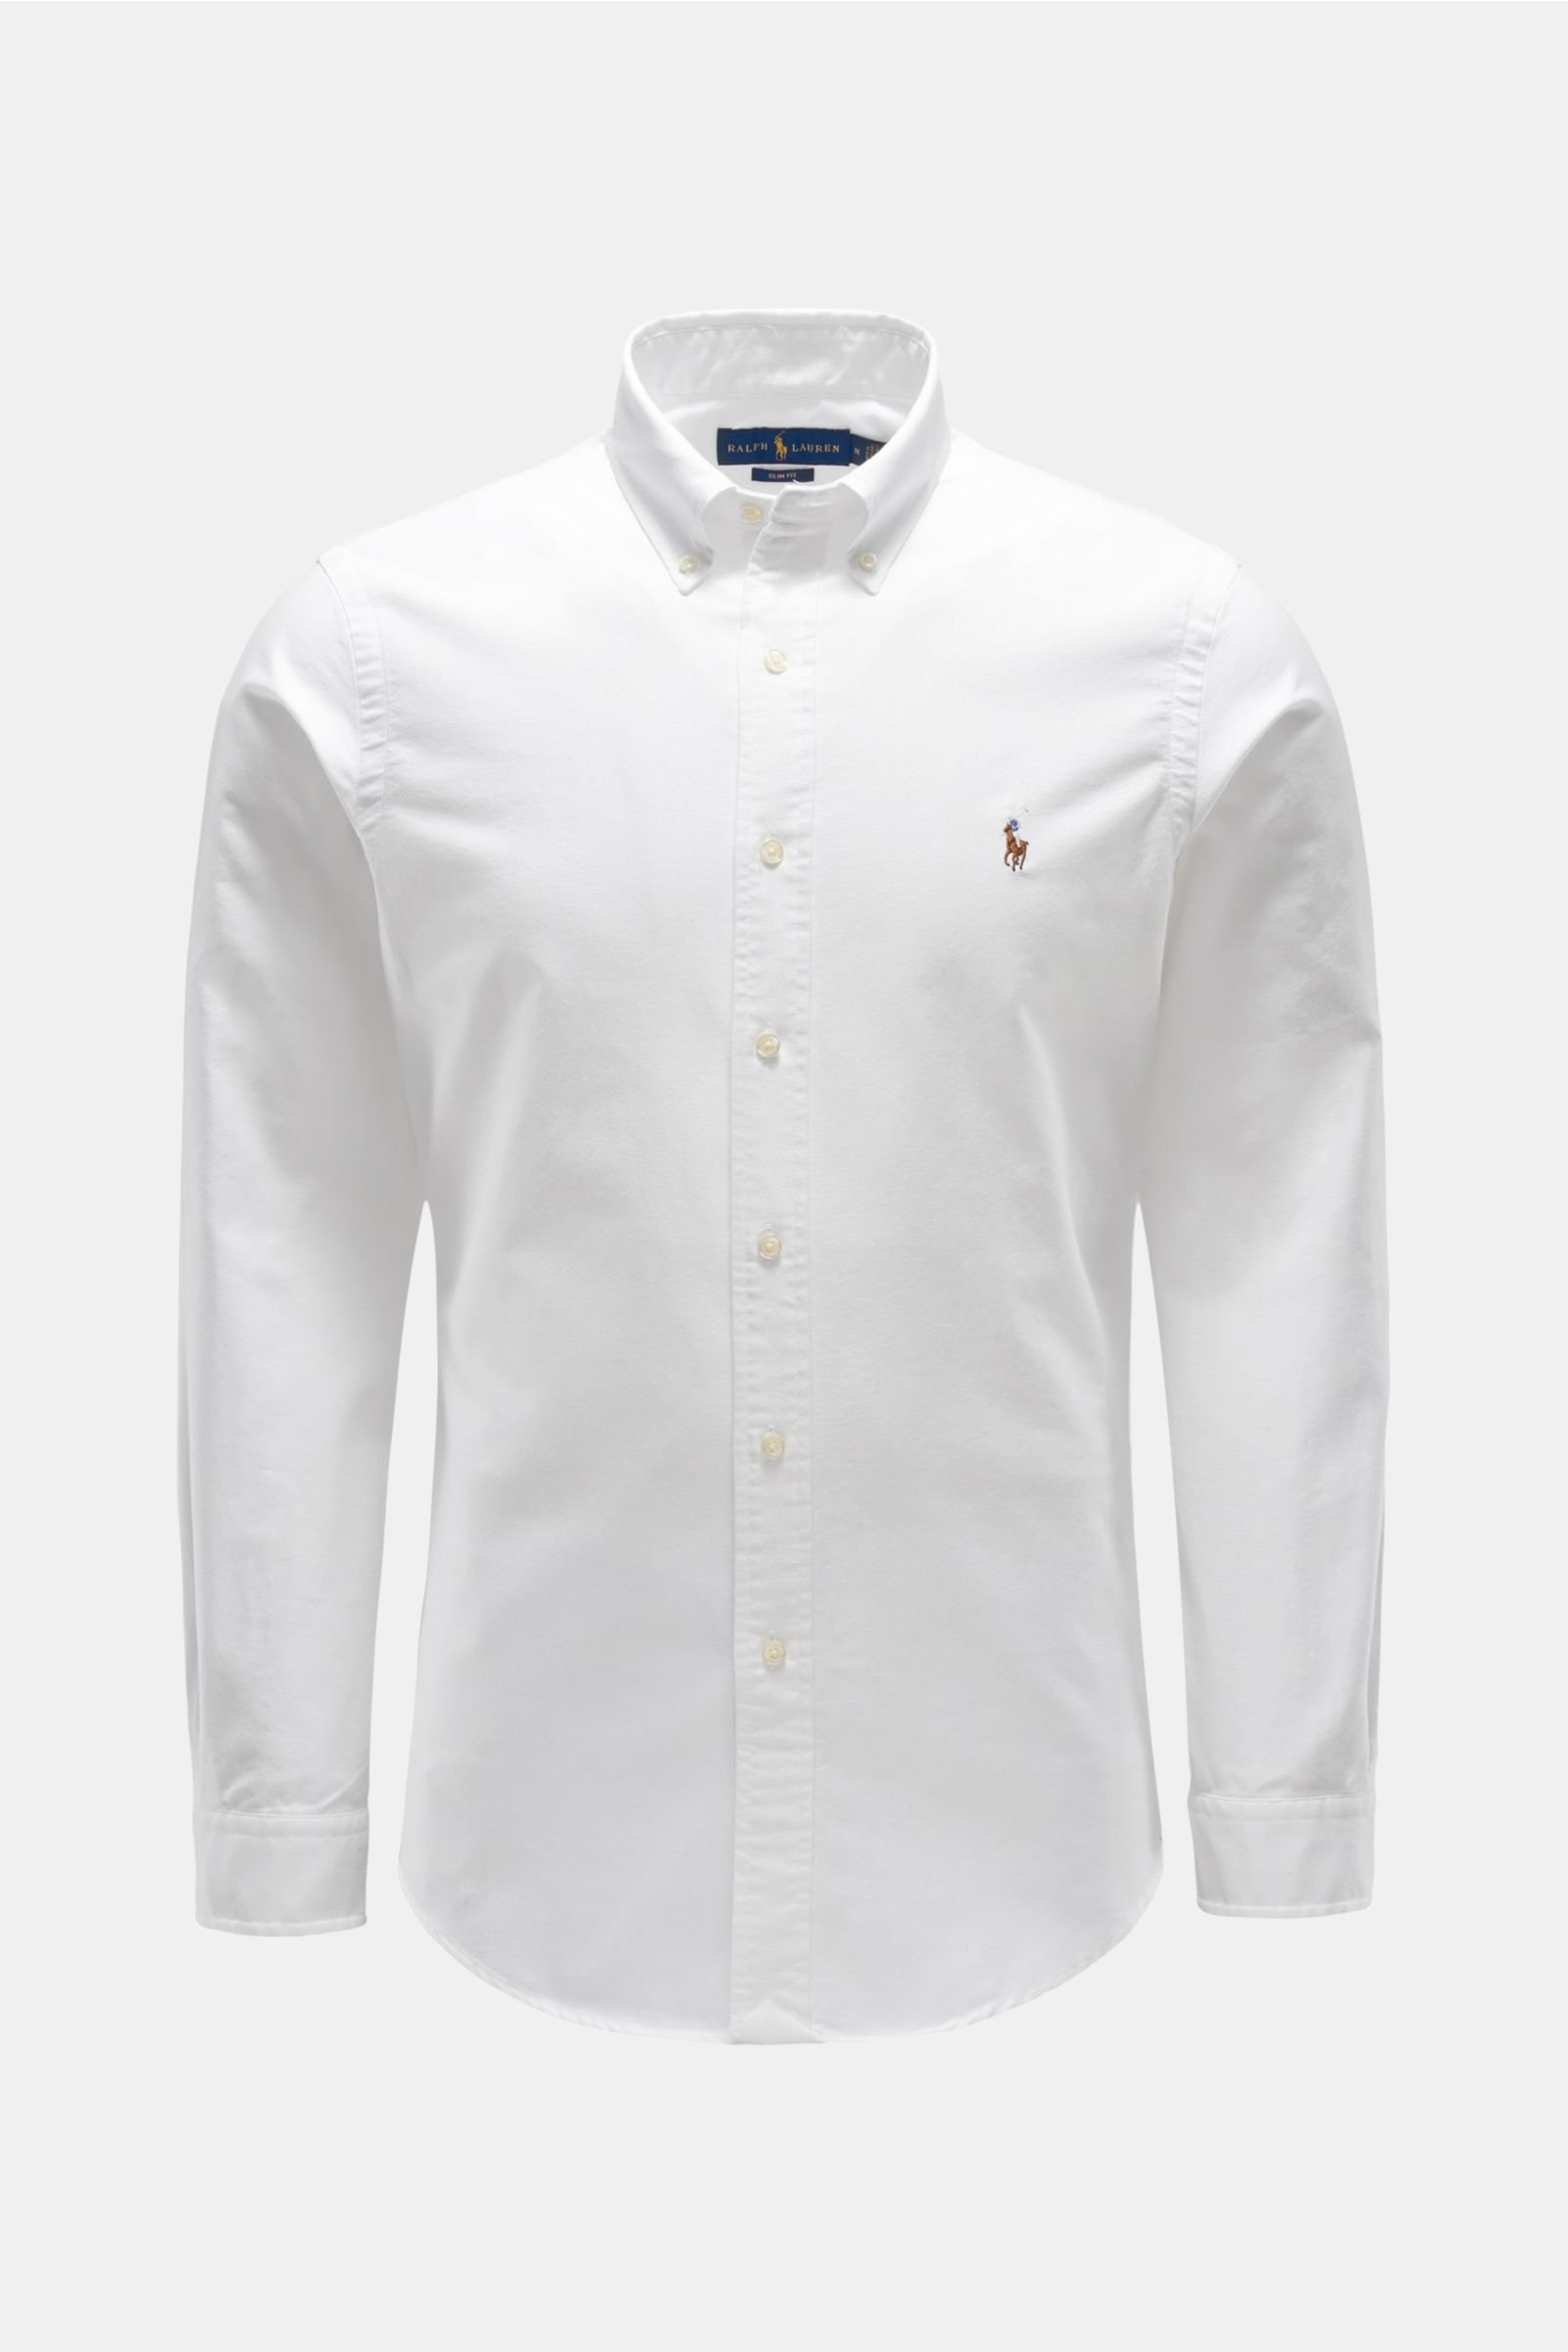 Oxford-Hemd Button-Down-Kragen weiß